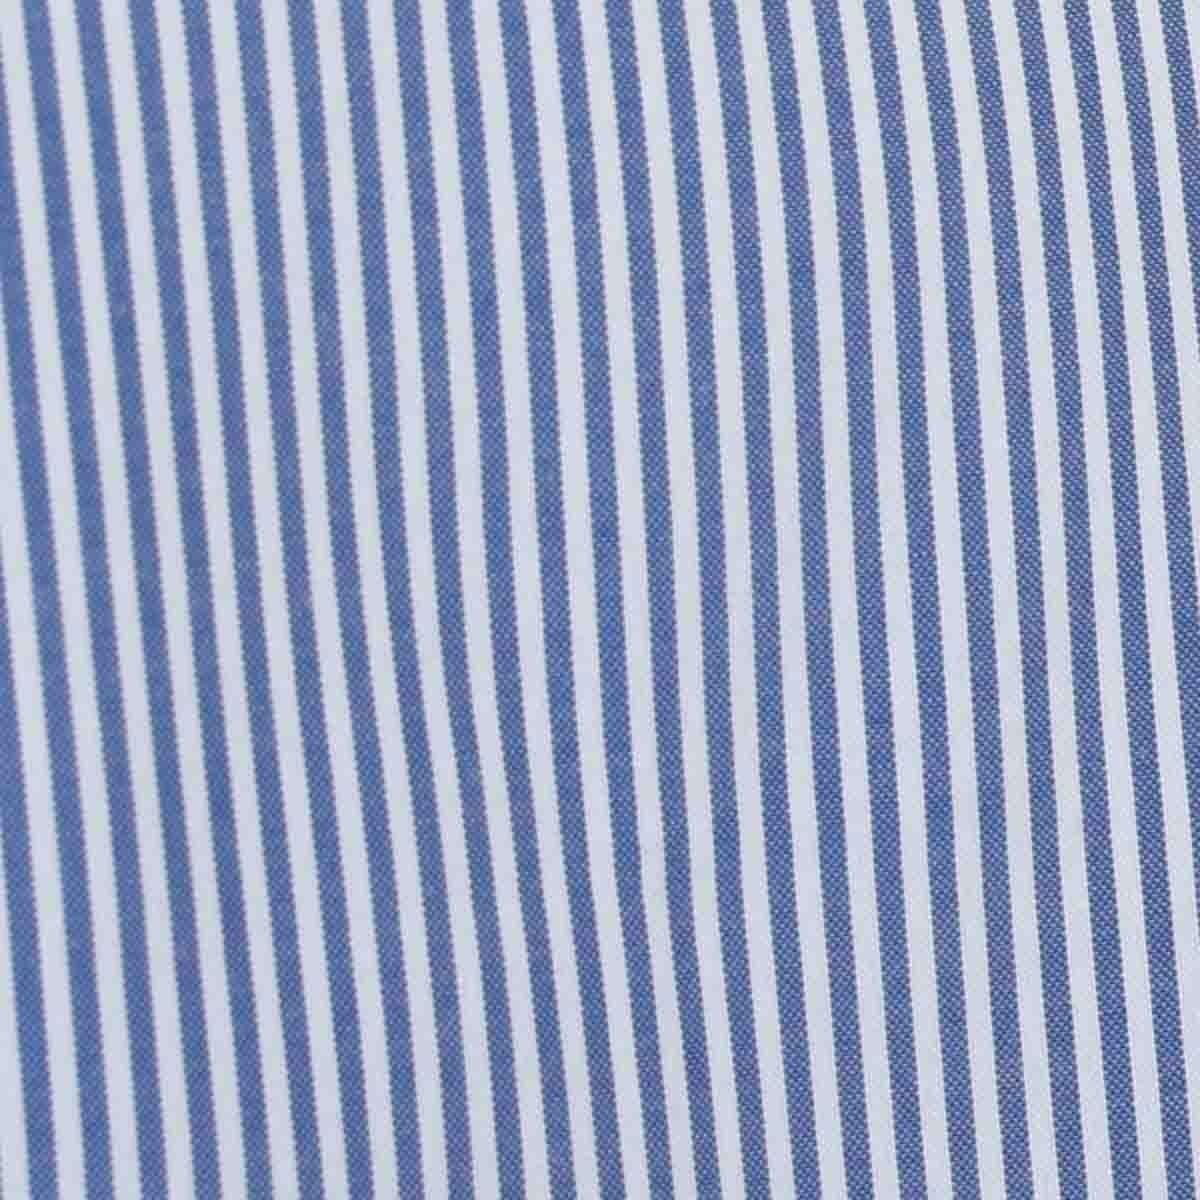 Camisa de Vestir Slim Fit Azul Obscuro Secf-0719 Carlo Corinto para Caballero